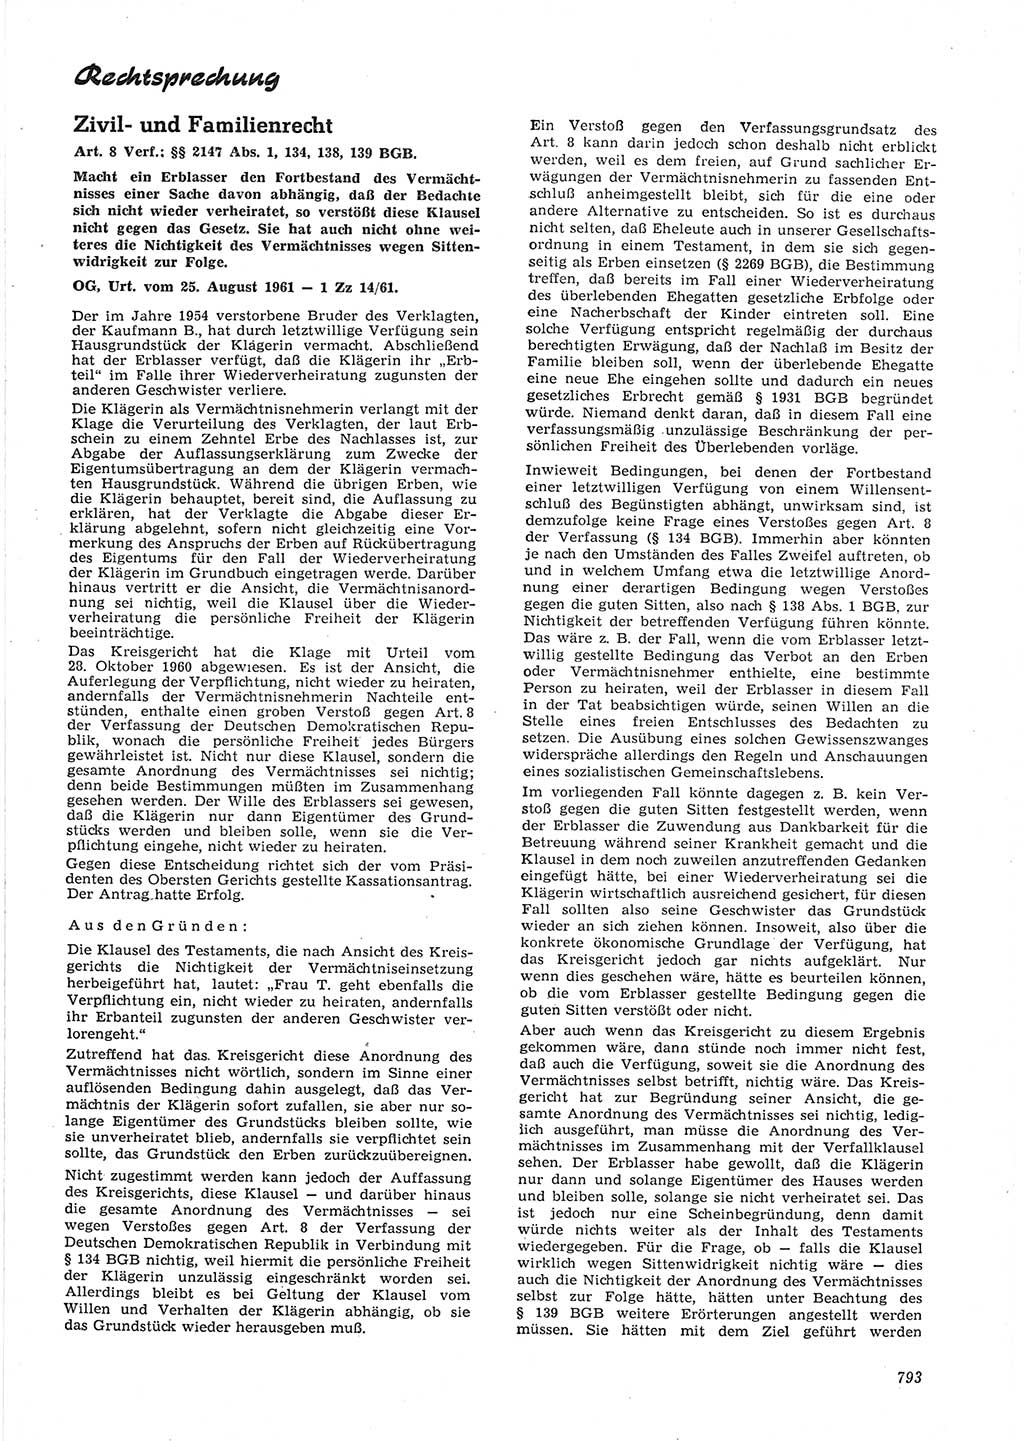 Neue Justiz (NJ), Zeitschrift für Recht und Rechtswissenschaft [Deutsche Demokratische Republik (DDR)], 15. Jahrgang 1961, Seite 793 (NJ DDR 1961, S. 793)